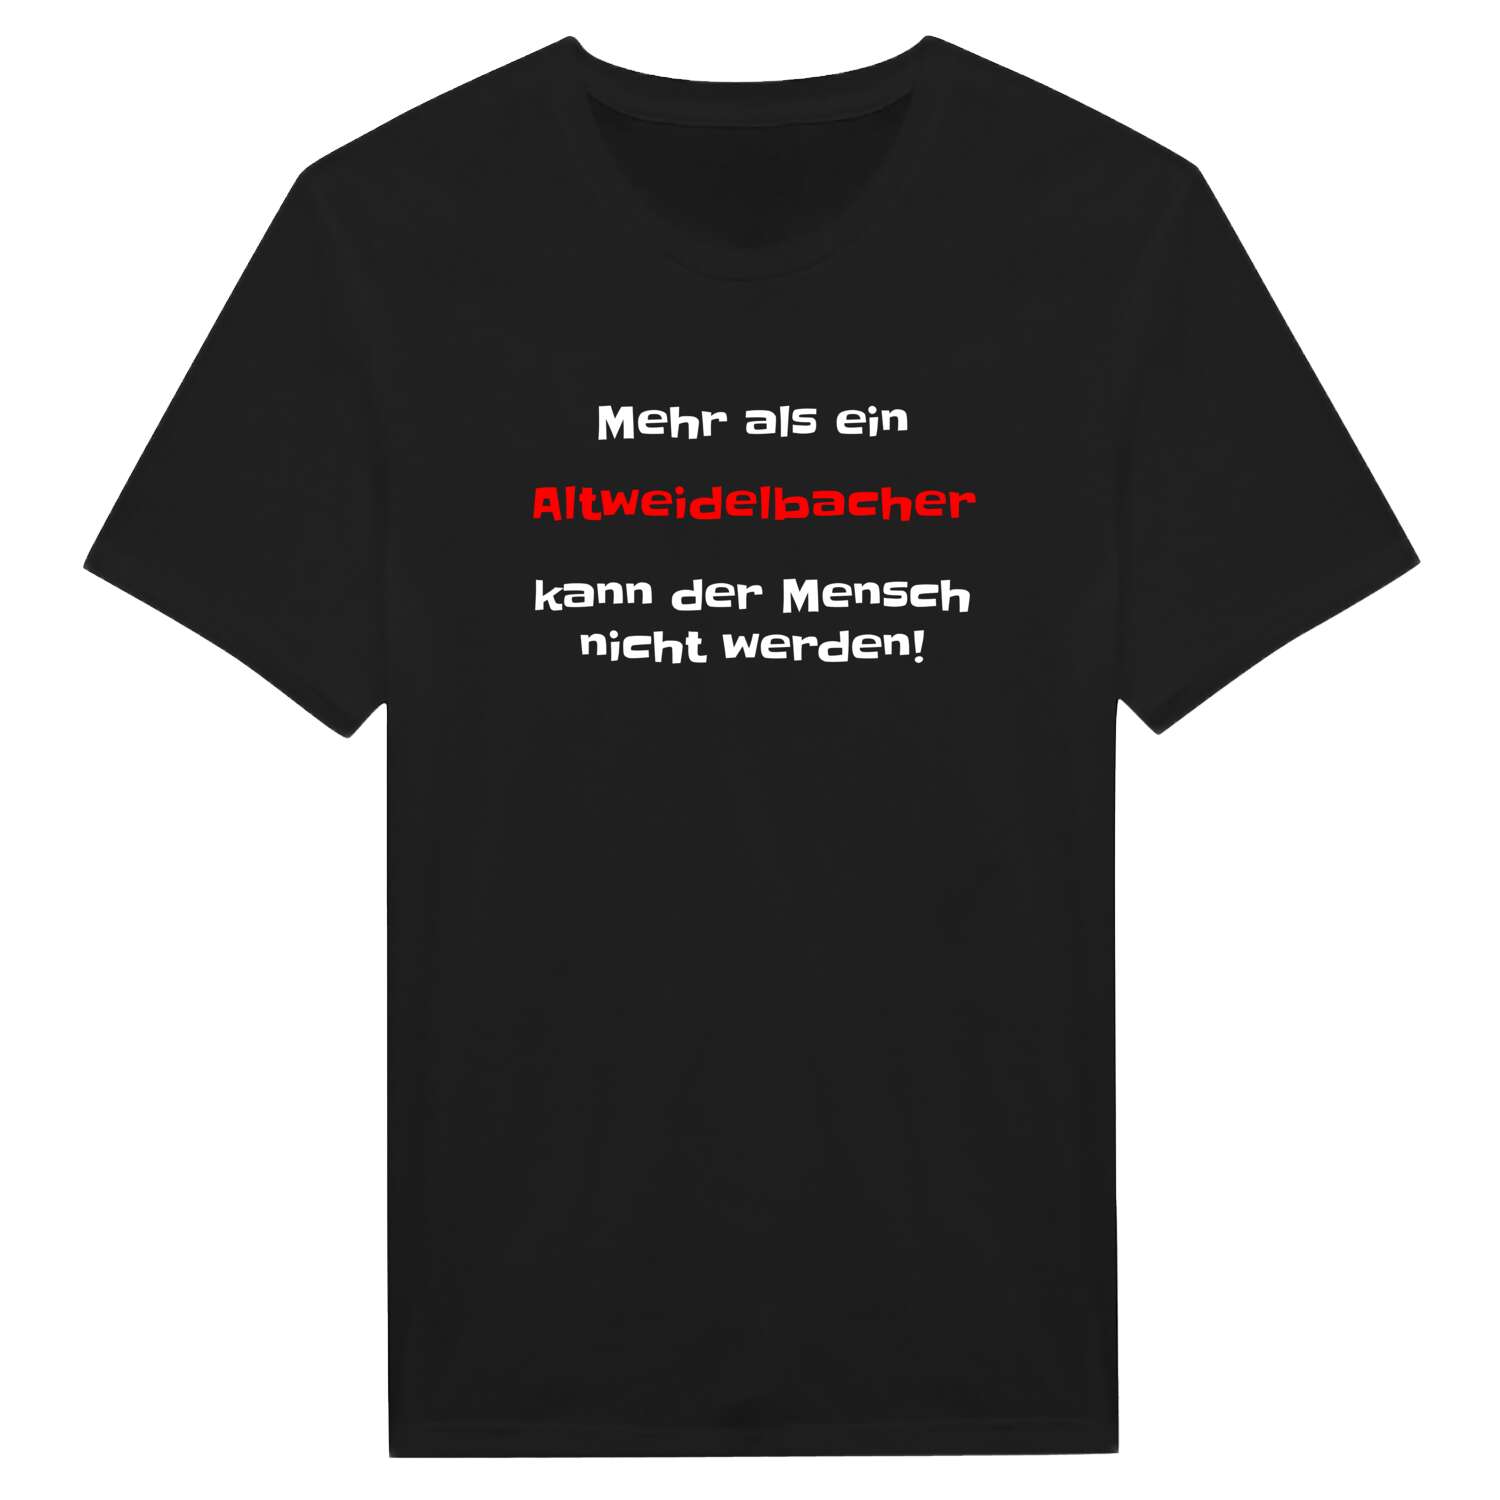 Altweidelbach T-Shirt »Mehr als ein«